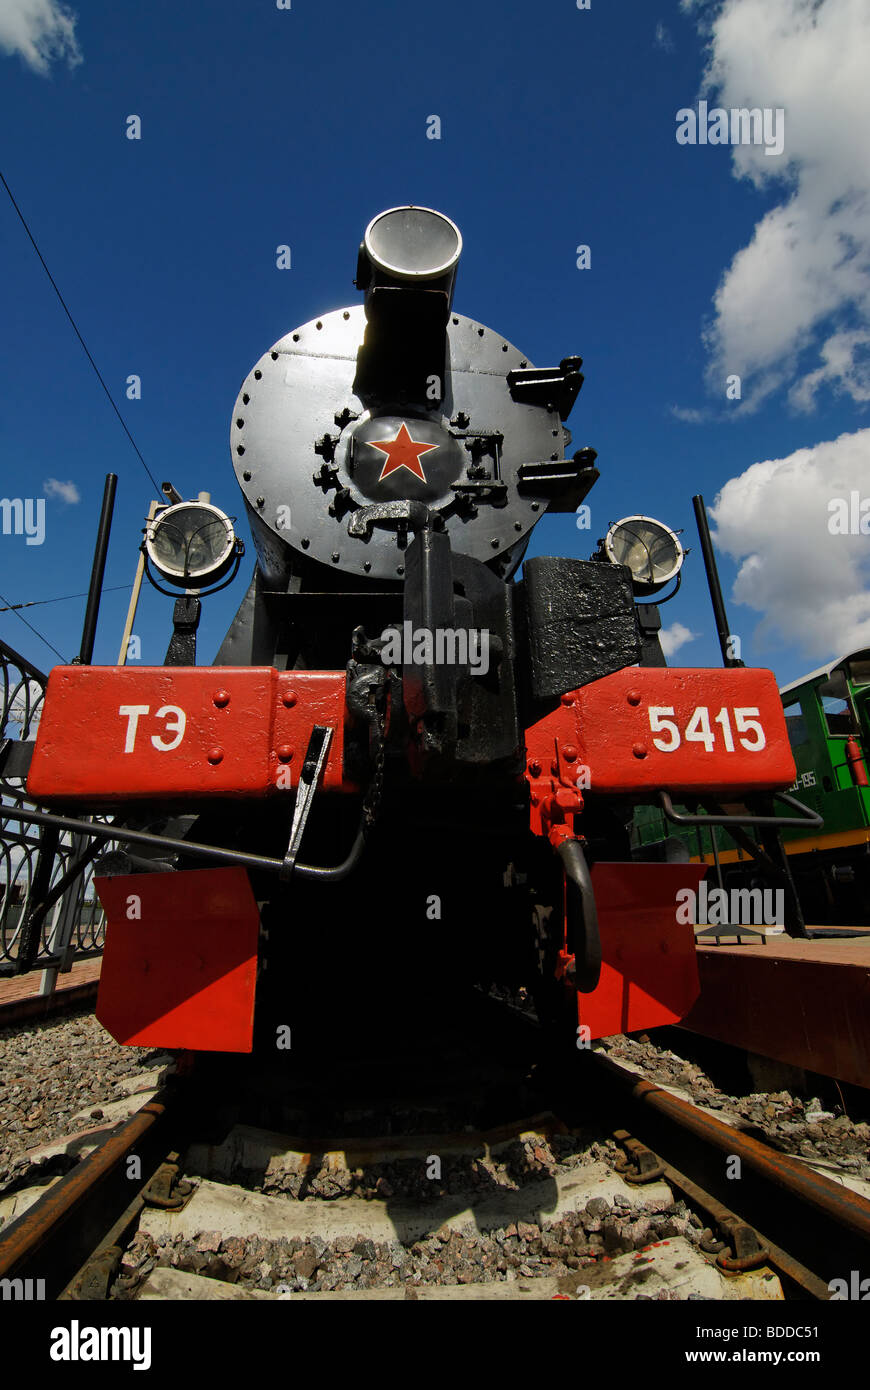 Vue de face de l'allemand seconde guerre mondiale TE-5415 locomotive à vapeur de la série 52. Construit en 1943. Banque D'Images